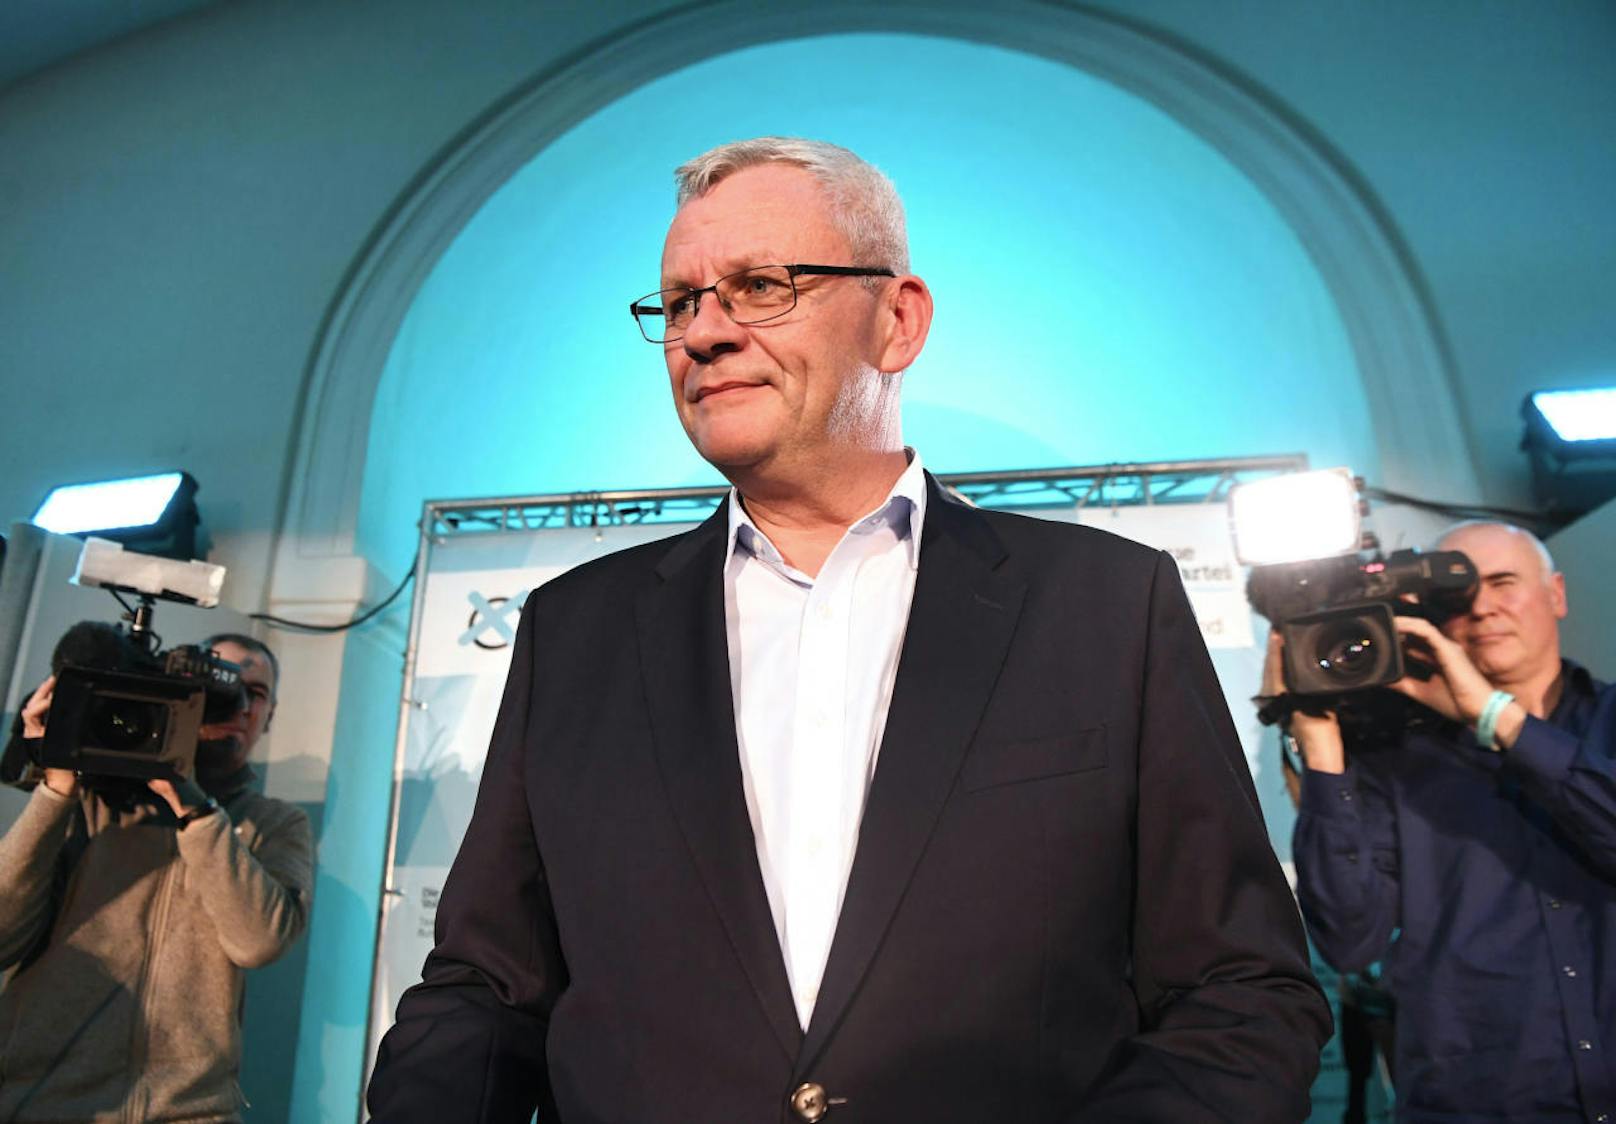 ÖVP-Spitzenkandidat Thomas Steiner ist vor allem als langjähriger Bürgermeister von Eisenstadt bekannt. Als solcher schon eine politische Größe, will der studierte Jurist nun stärkste Kraft im Burgenland werden.